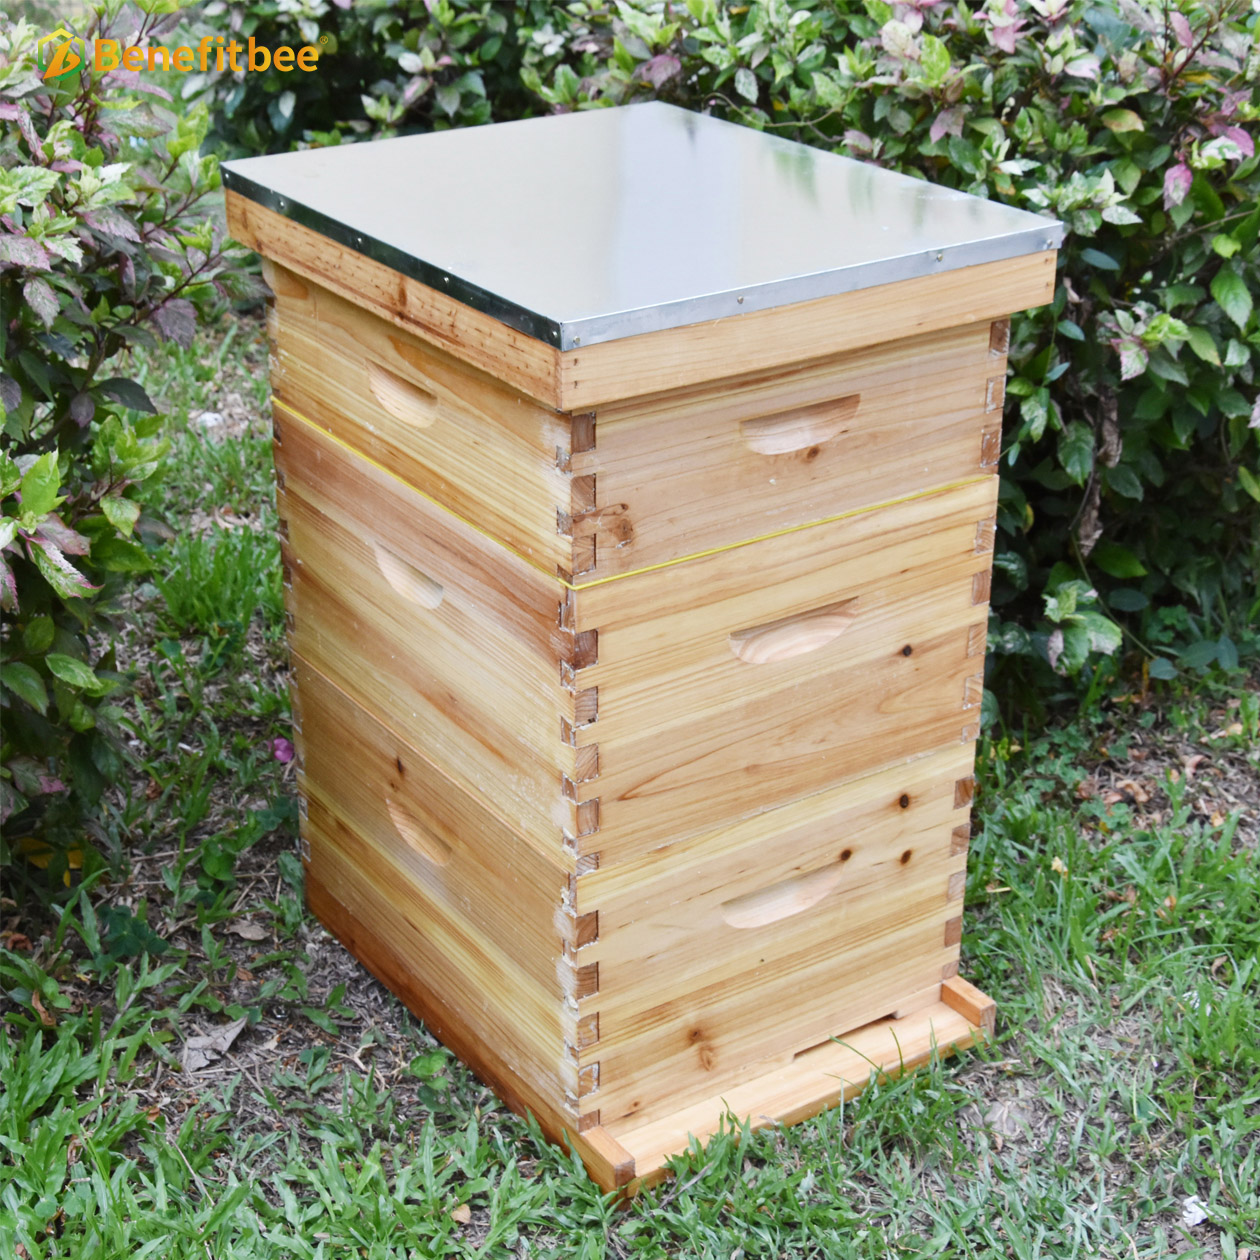 Benefitbee Langstroth Beehive Kit colmenas de abejas kit de colmena de abejas con 10 marcos